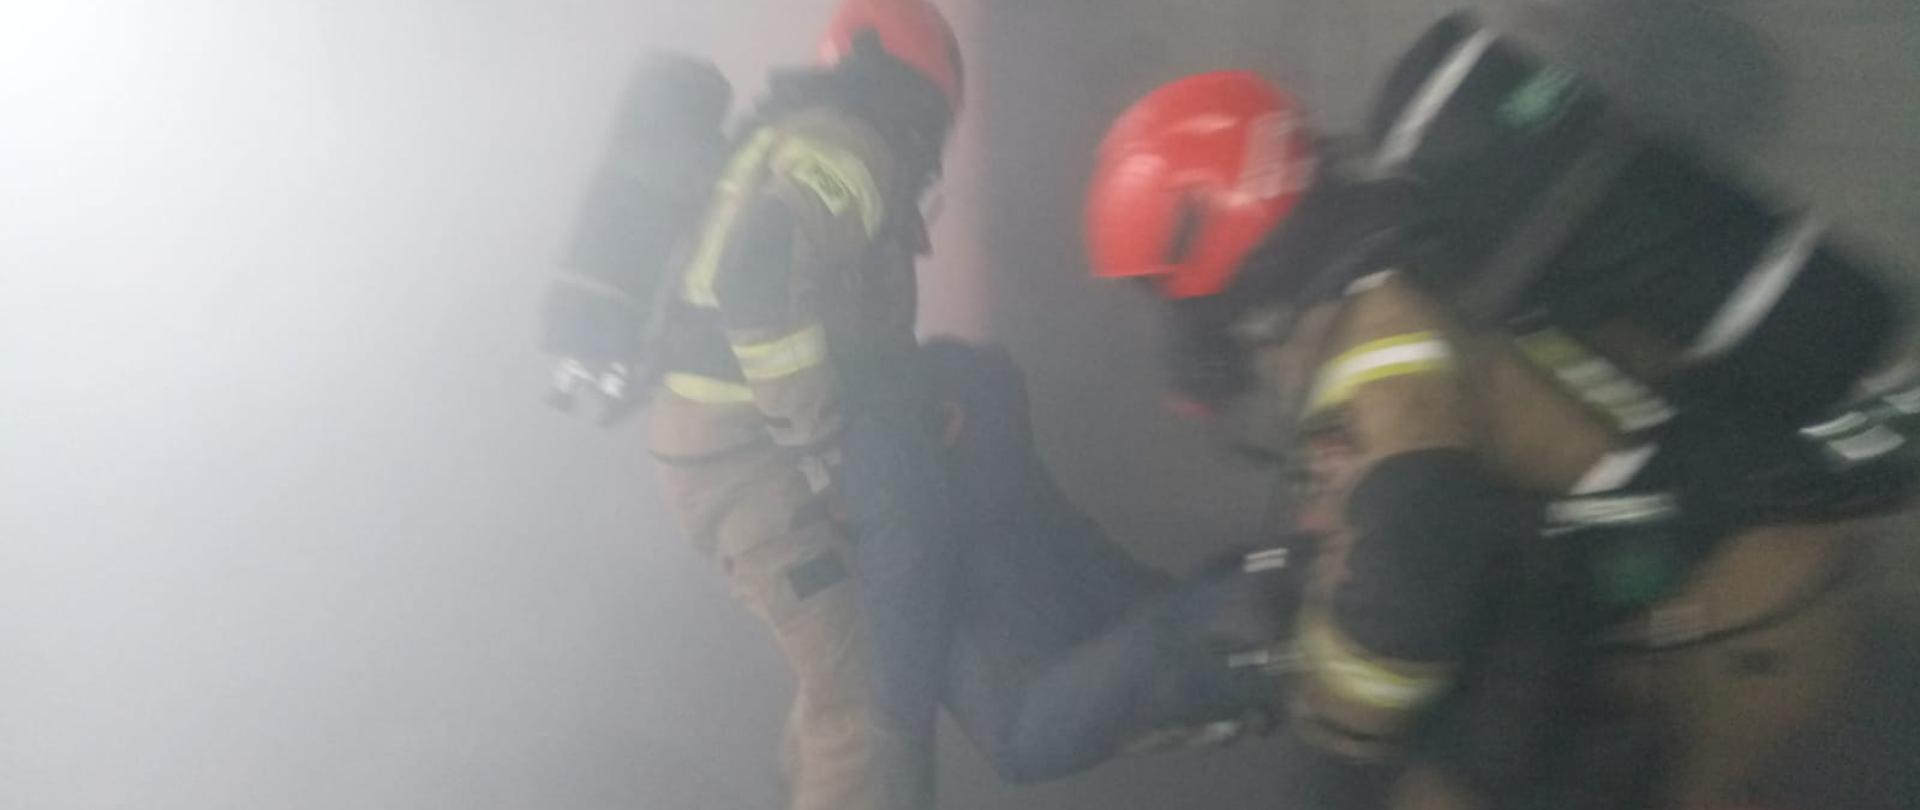 Ćwiczenia z pożarów wewnętrznych 26.02.2021